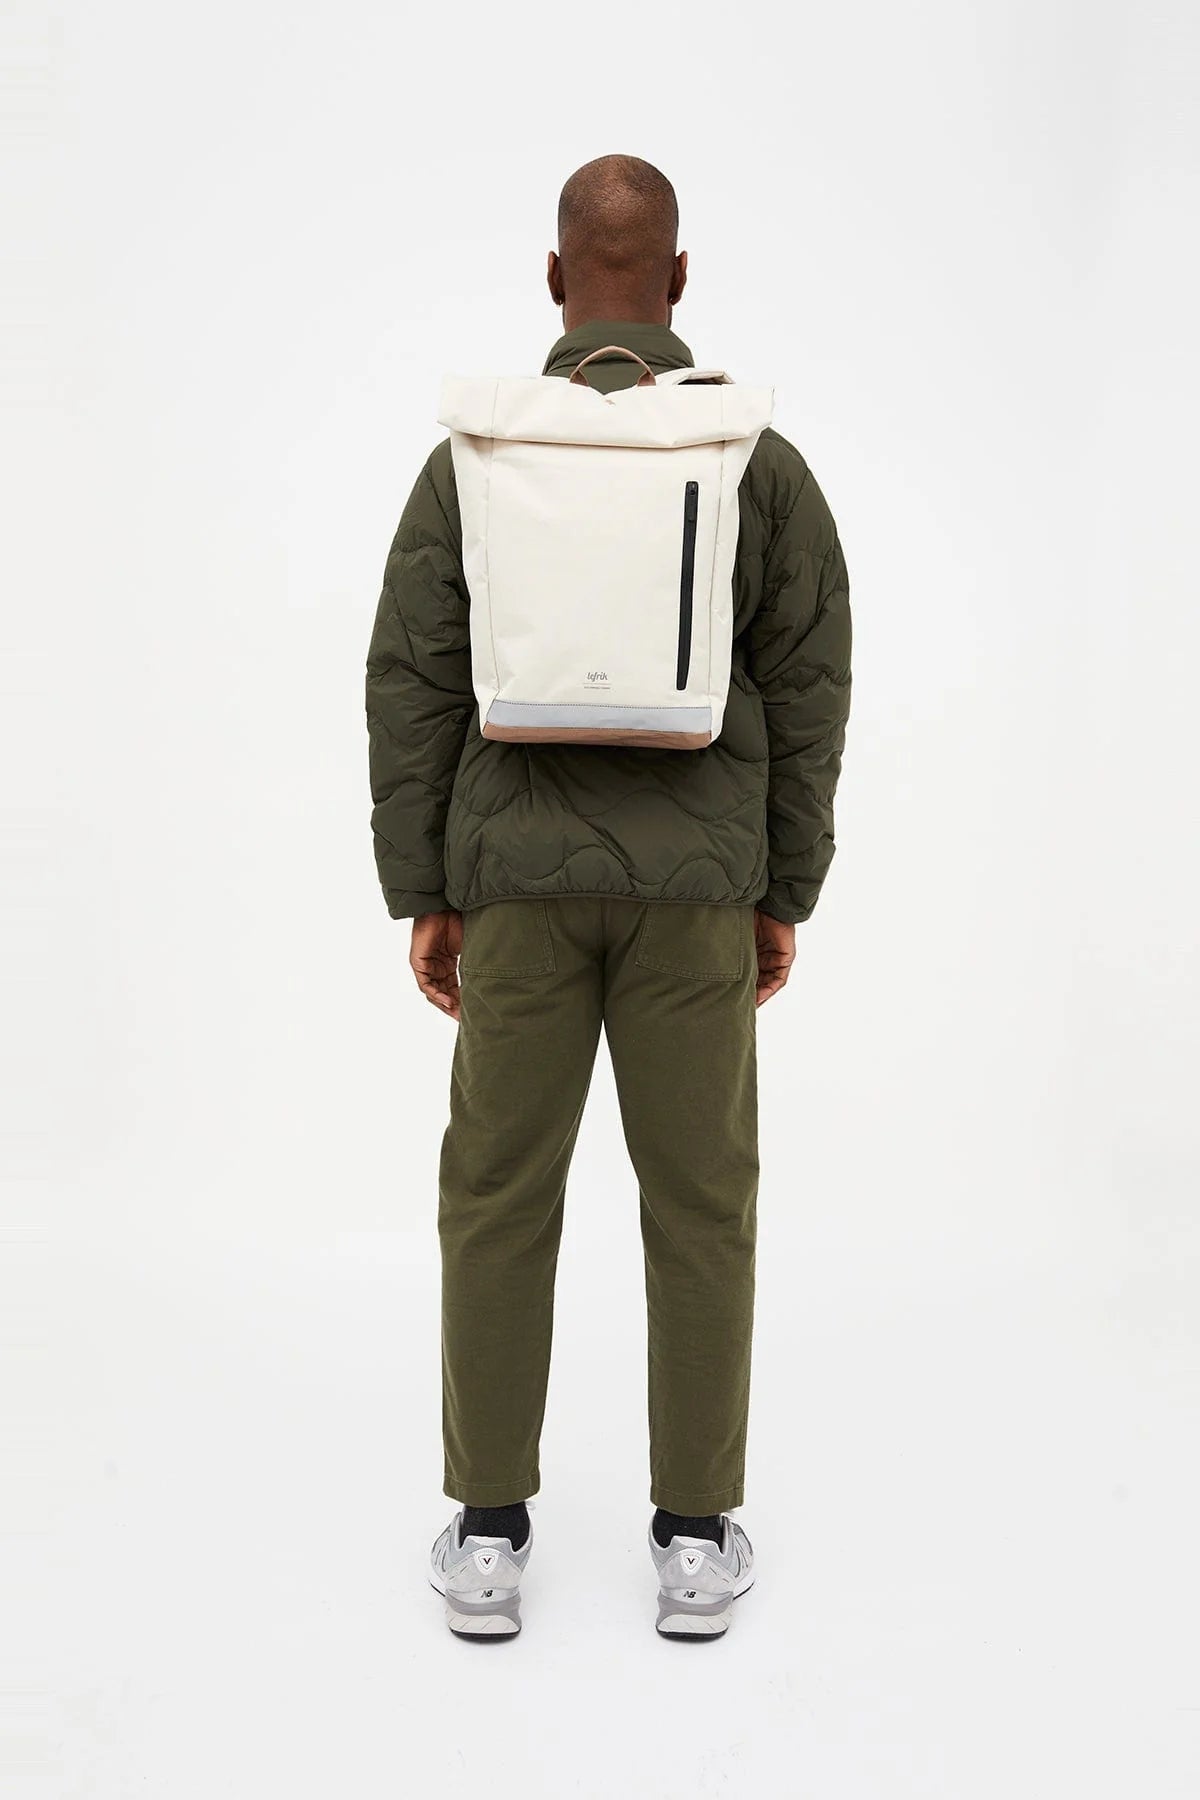 Lefrik Roll Reflective Backpack